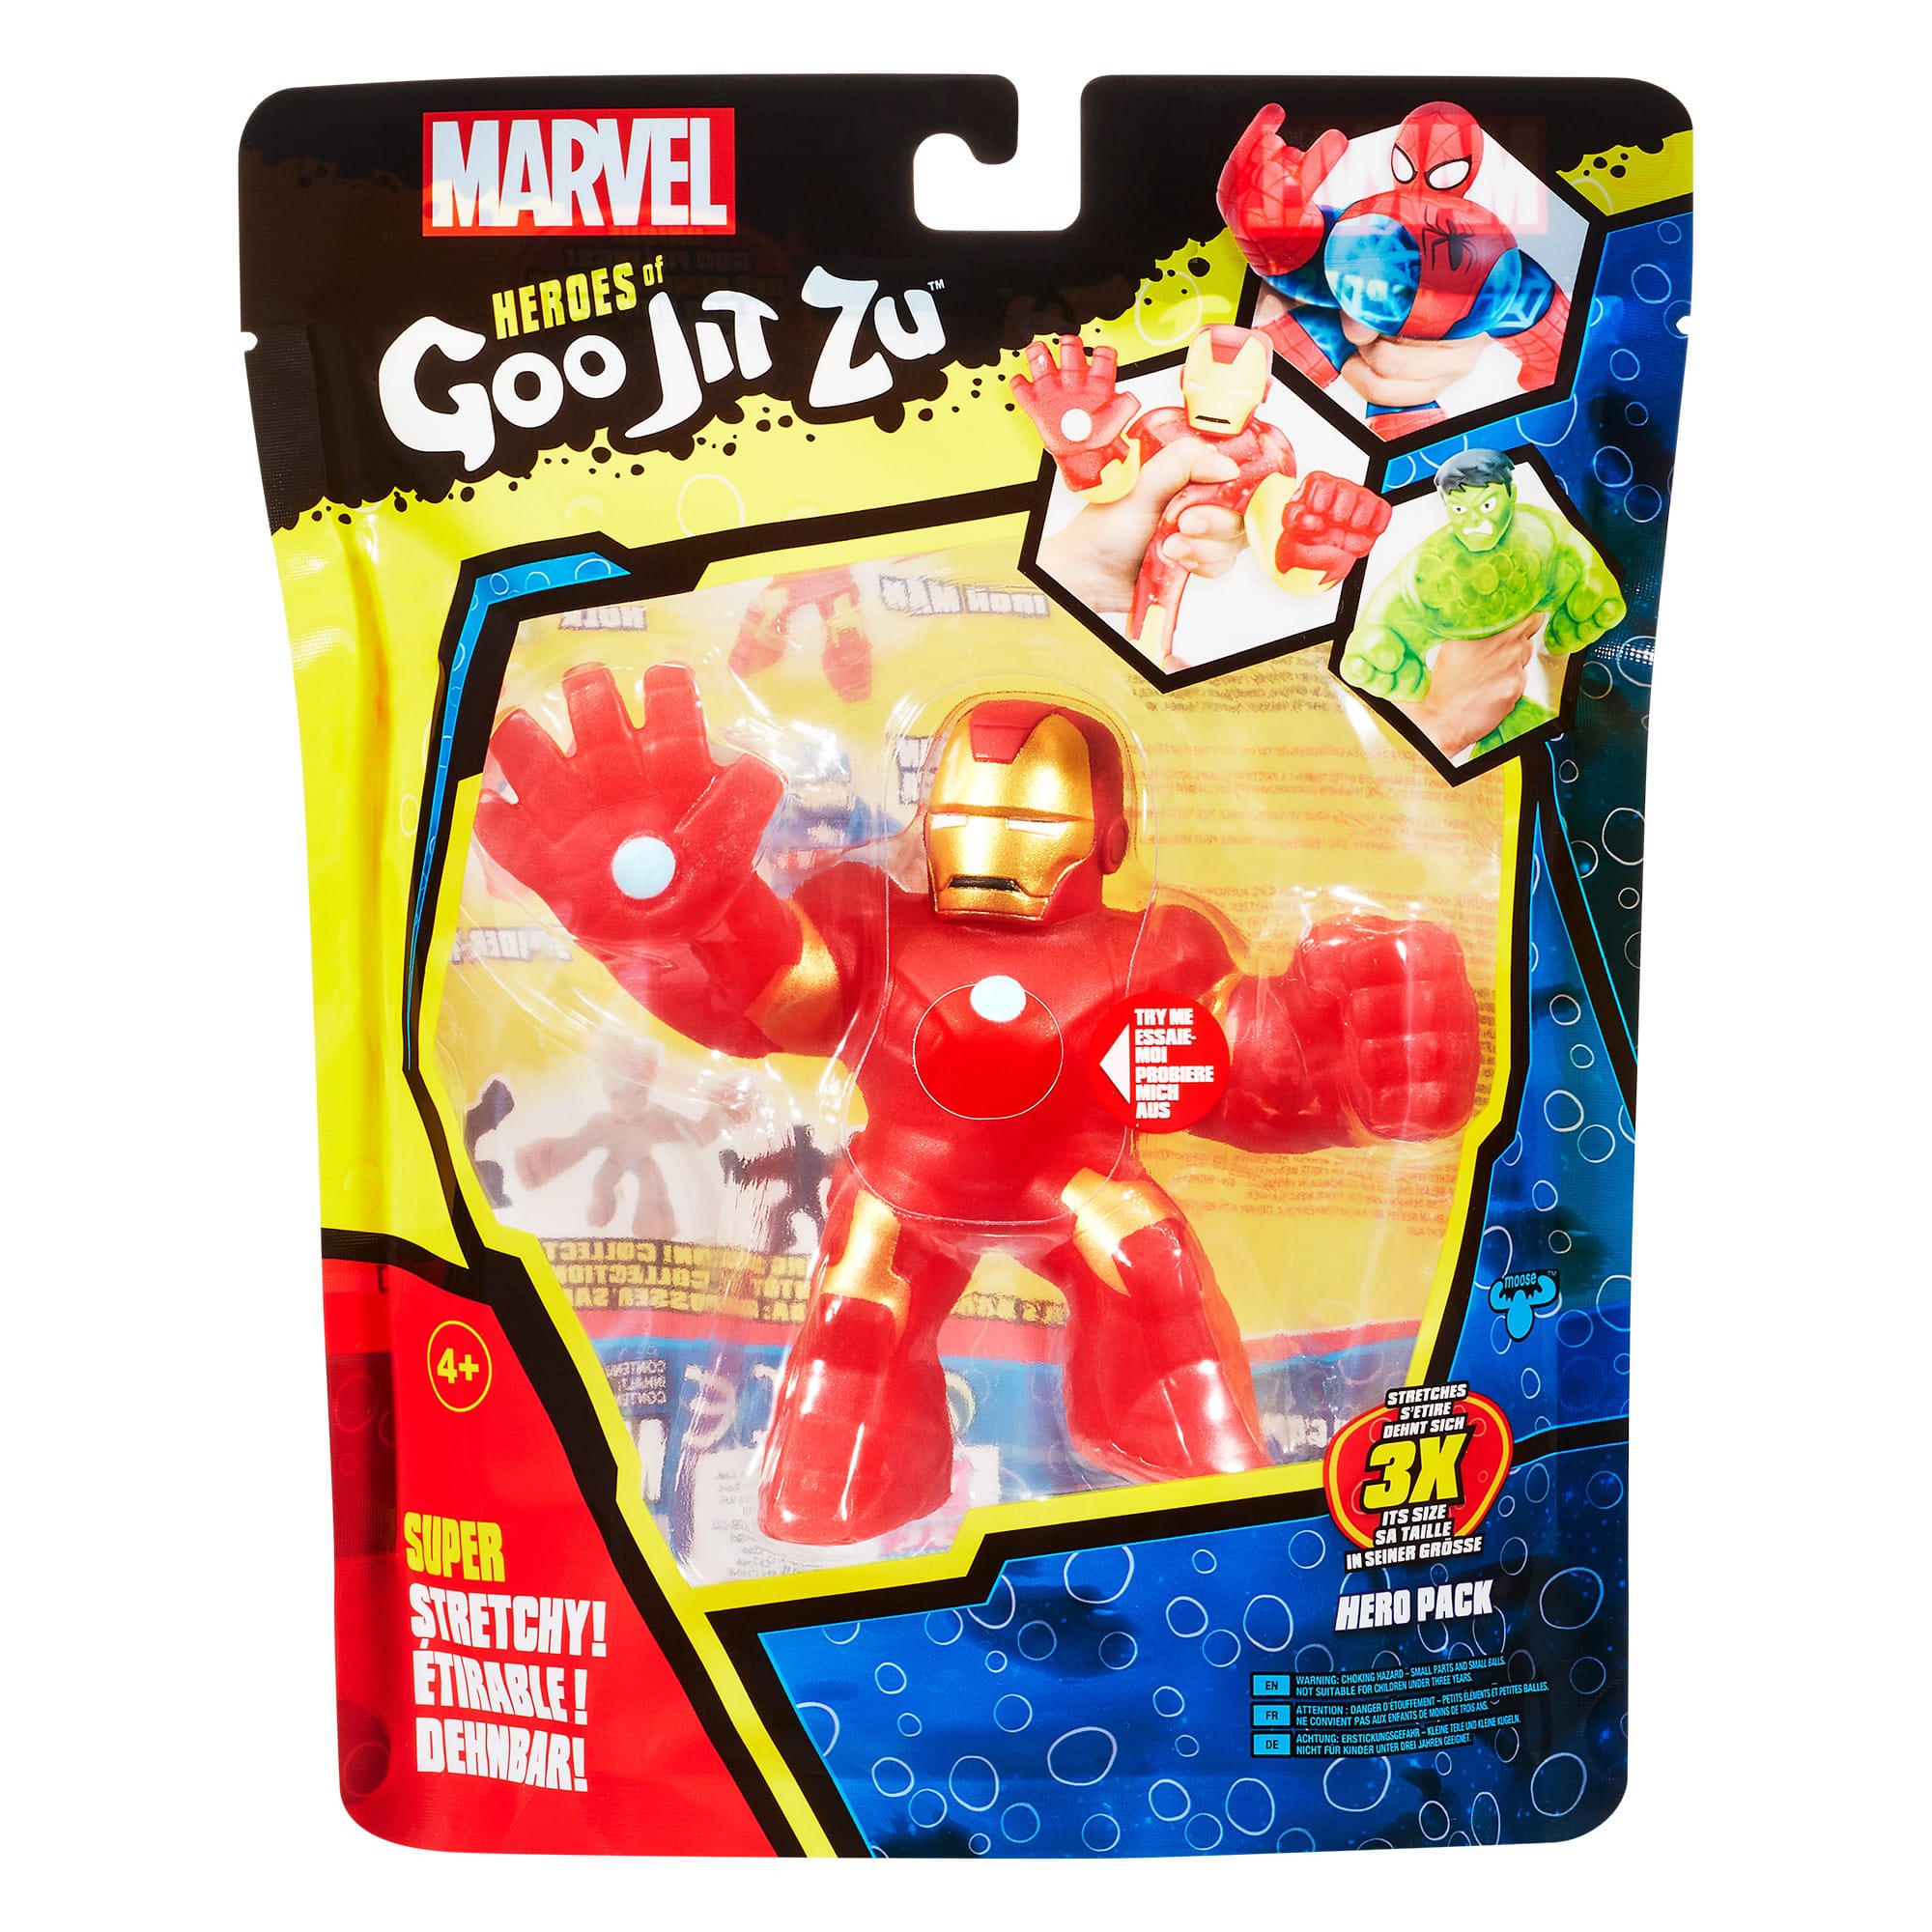 Heroes of Goo Jit Zu - Hero Pack - Marvel Iron Man Figure